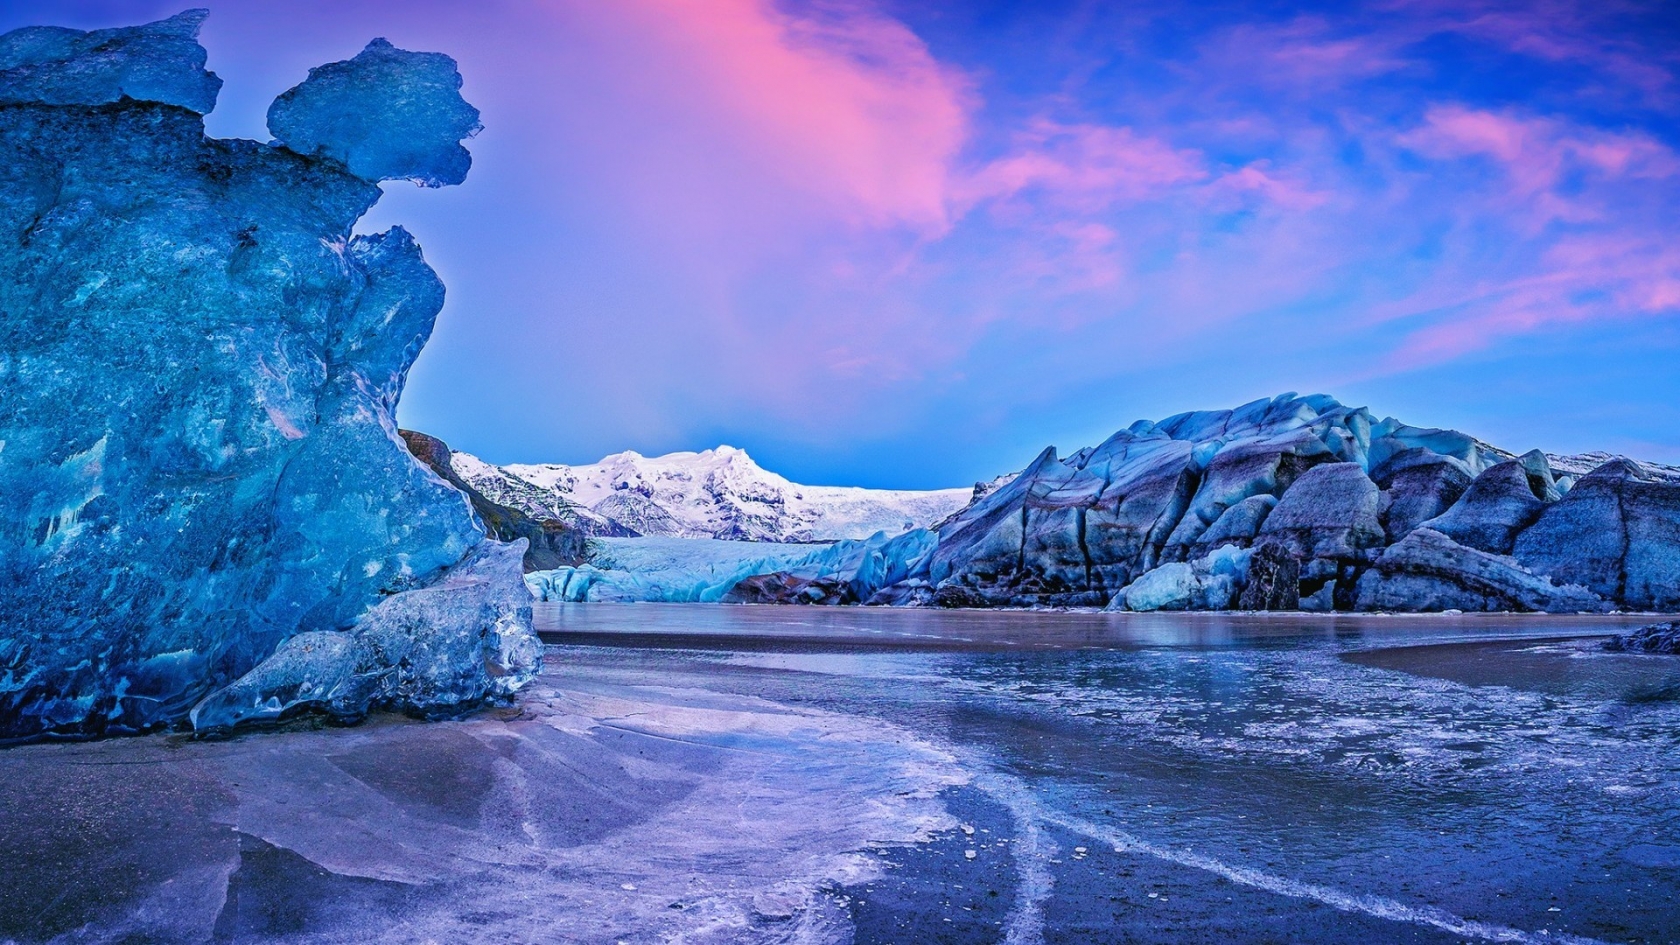 Vatna Glacier Icelend for 1680 x 945 HDTV resolution